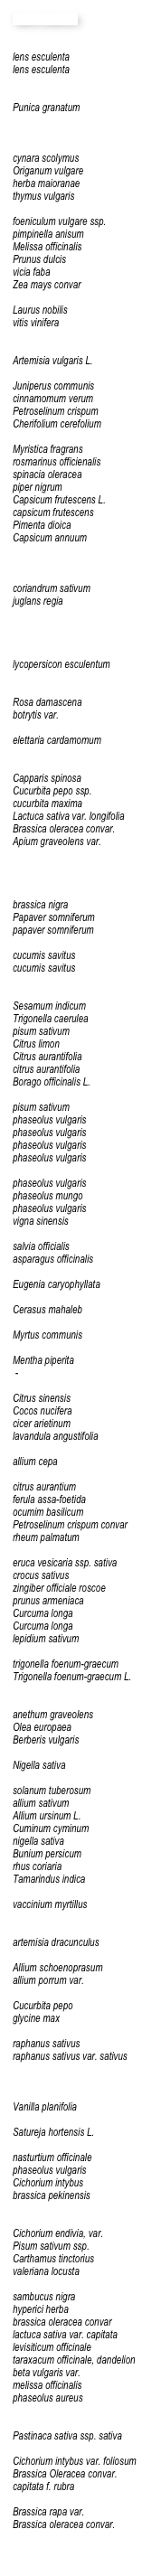 Name botanisch

lens esculentalens esculentaPunica granatumcynara scolymusOriganum vulgareherba maioranaethymus vulgarisfoeniculum vulgare ssp. pimpinella anisum Melissa officinalisPrunus dulcisvicia fabaZea mays convarLaurus nobilisvitis viniferaArtemisia vulgaris L.Juniperus communiscinnamomum verumPetroselinum crispumCherifolium cerefoliumMyristica fragransrosmarinus officienalisspinacia oleraceapiper nigrumCapsicum frutescens L.capsicum frutescensPimenta dioica Capsicum annuumcoriandrum sativumjuglans regialycopersicon esculentumRosa damascenabotrytis var.elettaria cardamomumCapparis spinosaCucurbita pepo ssp.cucurbita maximaLactuca sativa var. longifoliaBrassica oleracea convar. Apium graveolens var.brassica nigraPapaver somniferumpapaver somniferumcucumis savituscucumis savitusSesamum indicumTrigonella caeruleapisum sativumCitrus limonCitrus aurantifoliacitrus aurantifoliaBorago officinalis L.pisum sativumphaseolus vulgarisphaseolus vulgarisphaseolus vulgarisphaseolus vulgarisphaseolus vulgarisphaseolus mungophaseolus vulgarisvigna sinensissalvia officialisasparagus officinalisEugenia caryophyllataCerasus mahalebMyrtus communisMentha piperita -Citrus sinensisCocos nuciferacicer arietinumlavandula angustifoliaallium cepacitrus aurantiumferula assa-foetidaocumim basilicumPetroselinum crispum convarrheum palmatumeruca vesicaria ssp. sativacrocus sativuszingiber officiale roscoeprunus armeniacaCurcuma longaCurcuma longalepidium sativumtrigonella foenum-graecumTrigonella foenum-graecum L.anethum graveolensOlea europaeaBerberis vulgarisNigella sativasolanum tuberosumallium sativumAllium ursinum L.Cuminum cyminumnigella sativaBunium persicumrhus coriariaTamarindus indicavaccinium myrtillusartemisia dracunculusAllium schoenoprasumallium porrum var.Cucurbita pepoglycine maxraphanus sativusraphanus sativus var. sativusVanilla planifoliaSatureja hortensis L.nasturtium officinalephaseolus vulgarisCichorium intybusbrassica pekinensisCichorium endivia, var.Pisum sativum ssp.Carthamus tinctoriusvaleriana locustasambucus nigrahyperici herbabrassica oleracea convarlactuca sativa var. capitatalevisiticum officinaletaraxacum officinale, dandelionbeta vulgaris var.melissa officinalisphaseolus aureusPastinaca sativa ssp. sativaCichorium intybus var. foliosumBrassica Oleracea convar.capitata f. rubraBrassica rapa var.Brassica oleracea convar.
